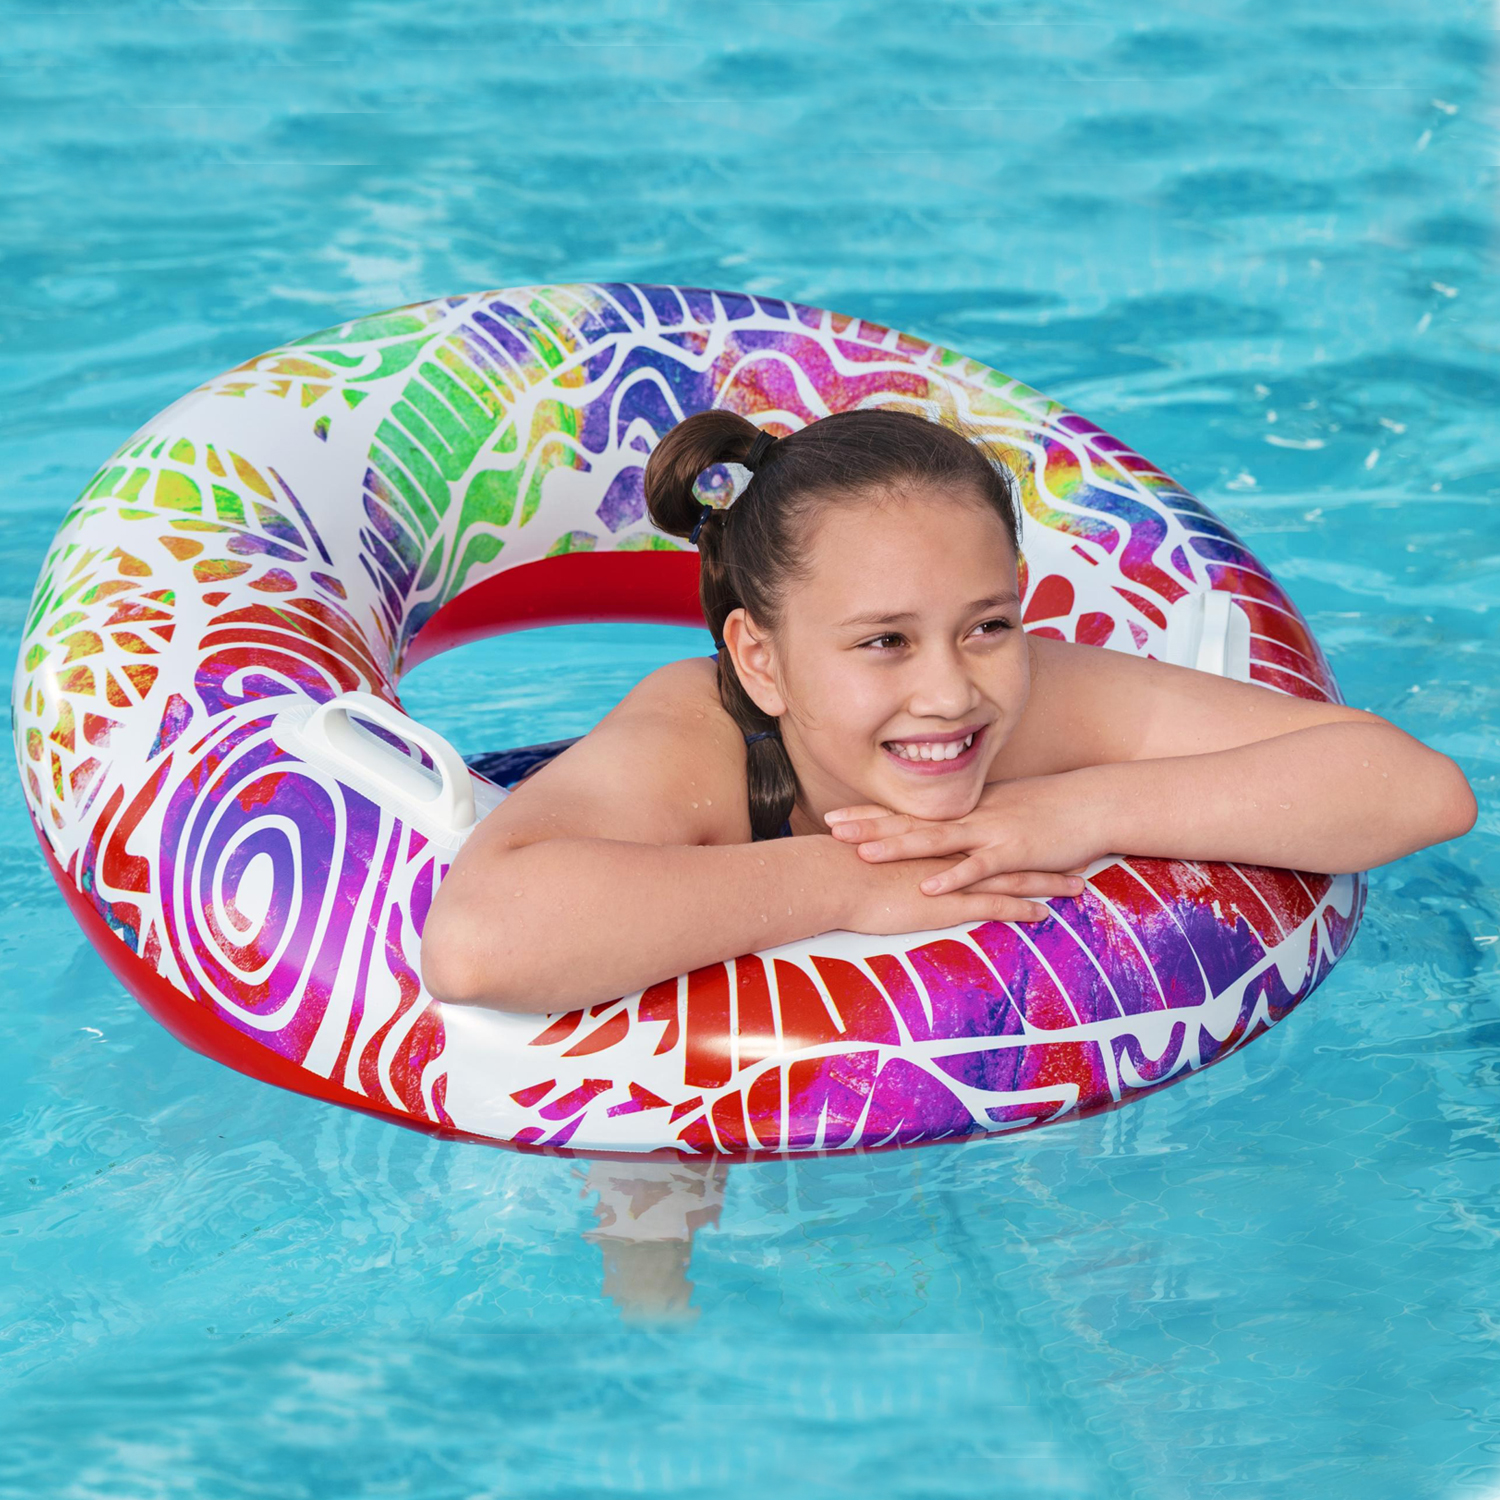 Flotteurs de piscine gonflables pour enfants, 127 cm - Flotteurs de piscine  géants et flottants gonflables pour piscine - Jouets amusants pour enfants  de 4 à 8 ans - Jouets aquatiques durables